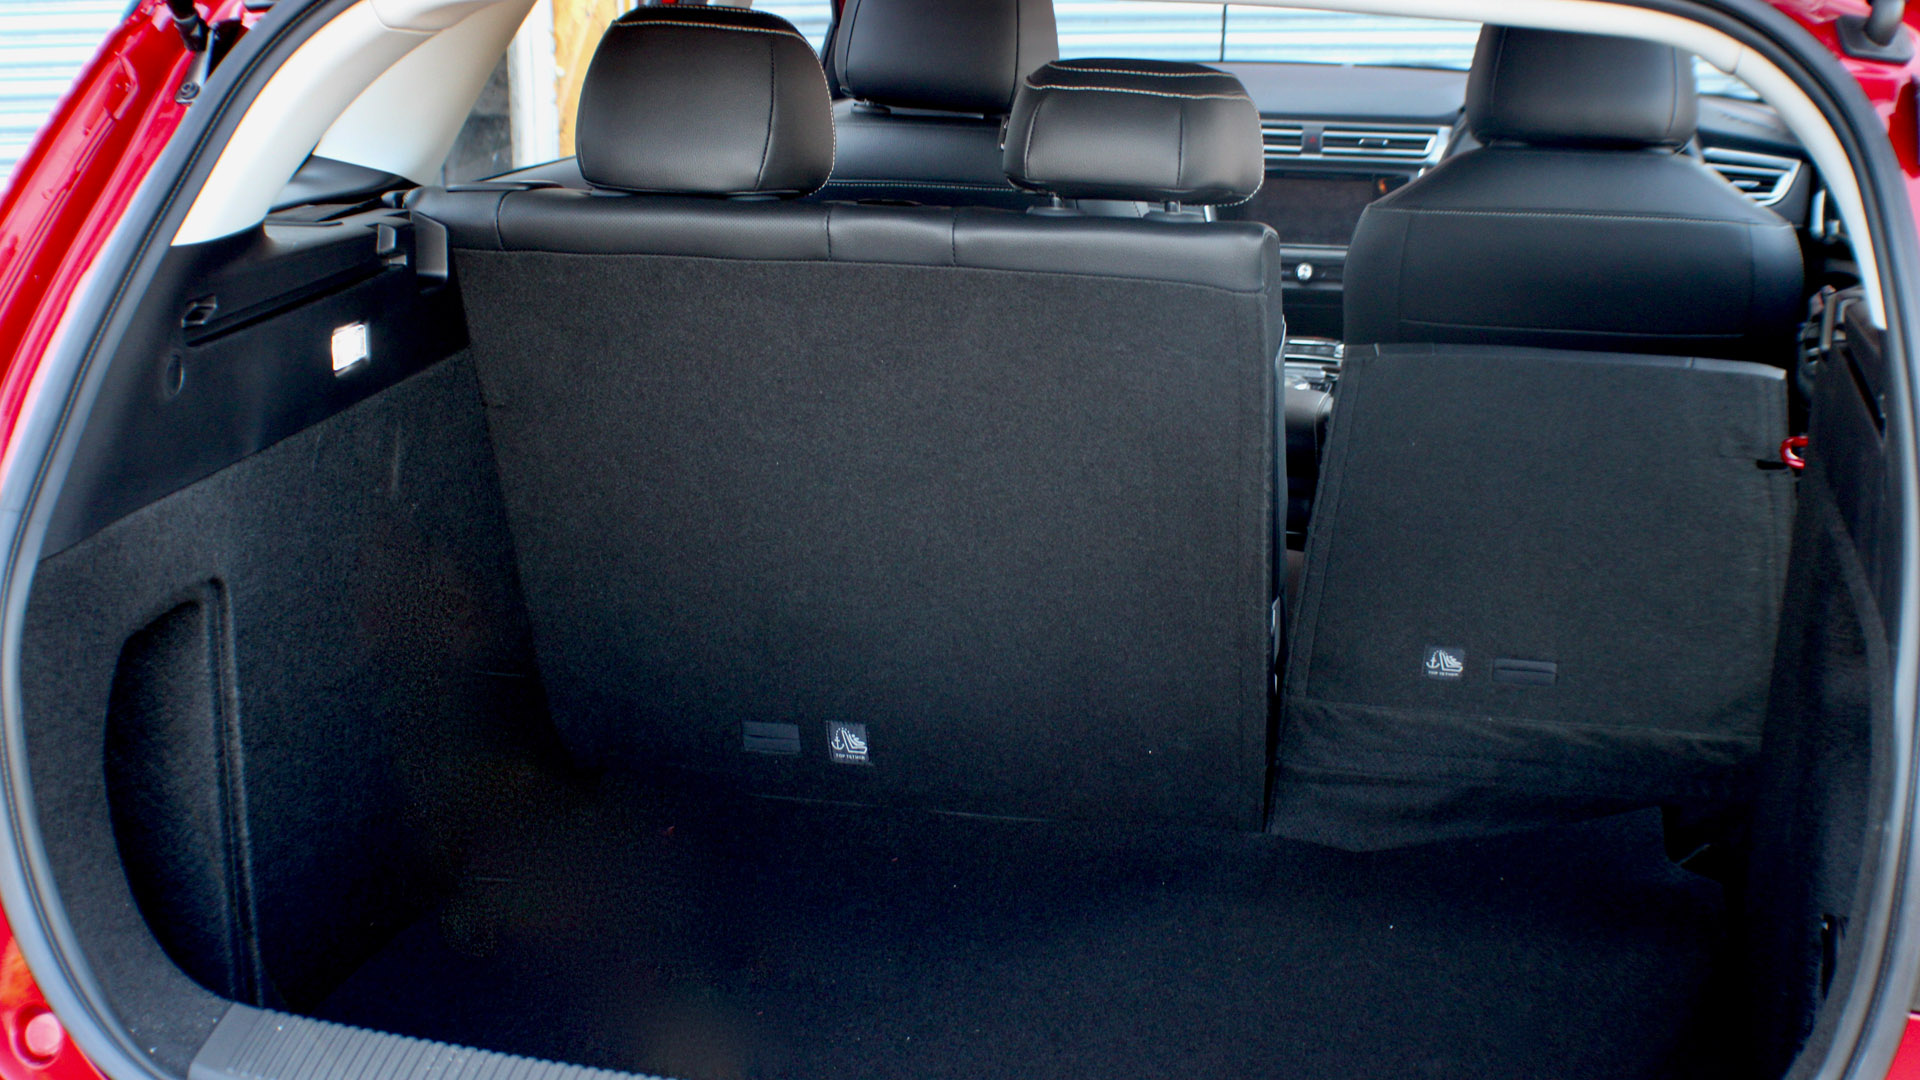 MG5 EV seats